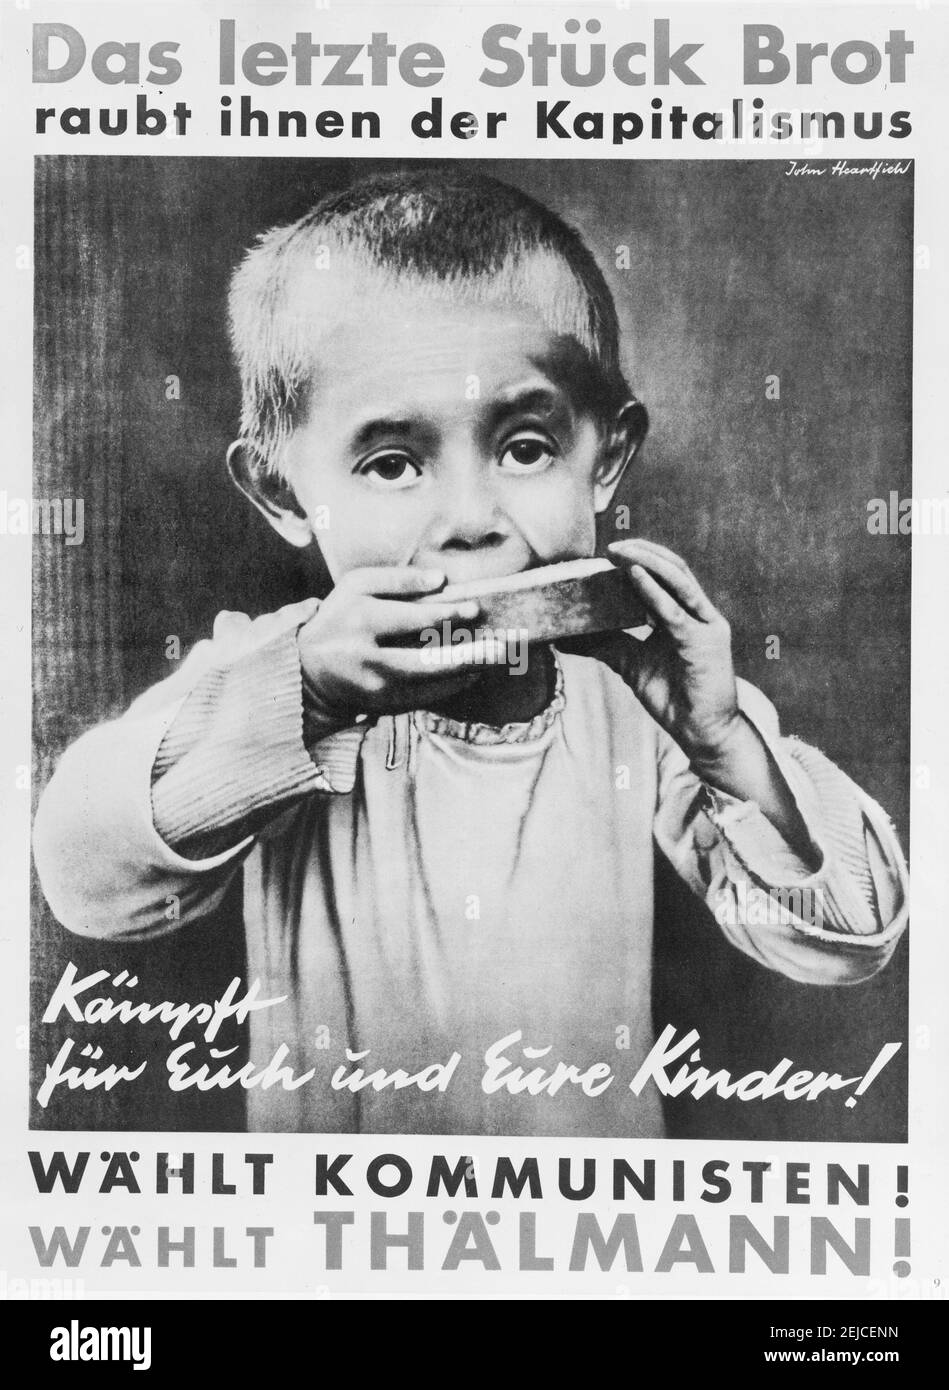 Le capitalisme les prive de leur dernier morceau de pain. Luttez pour vous-même et vos enfants ! Votez communistes ! Votez Thälmann!. Musée : COLLECTION PRIVÉE. Auteur: JOHN HEARTFIELD. Banque D'Images